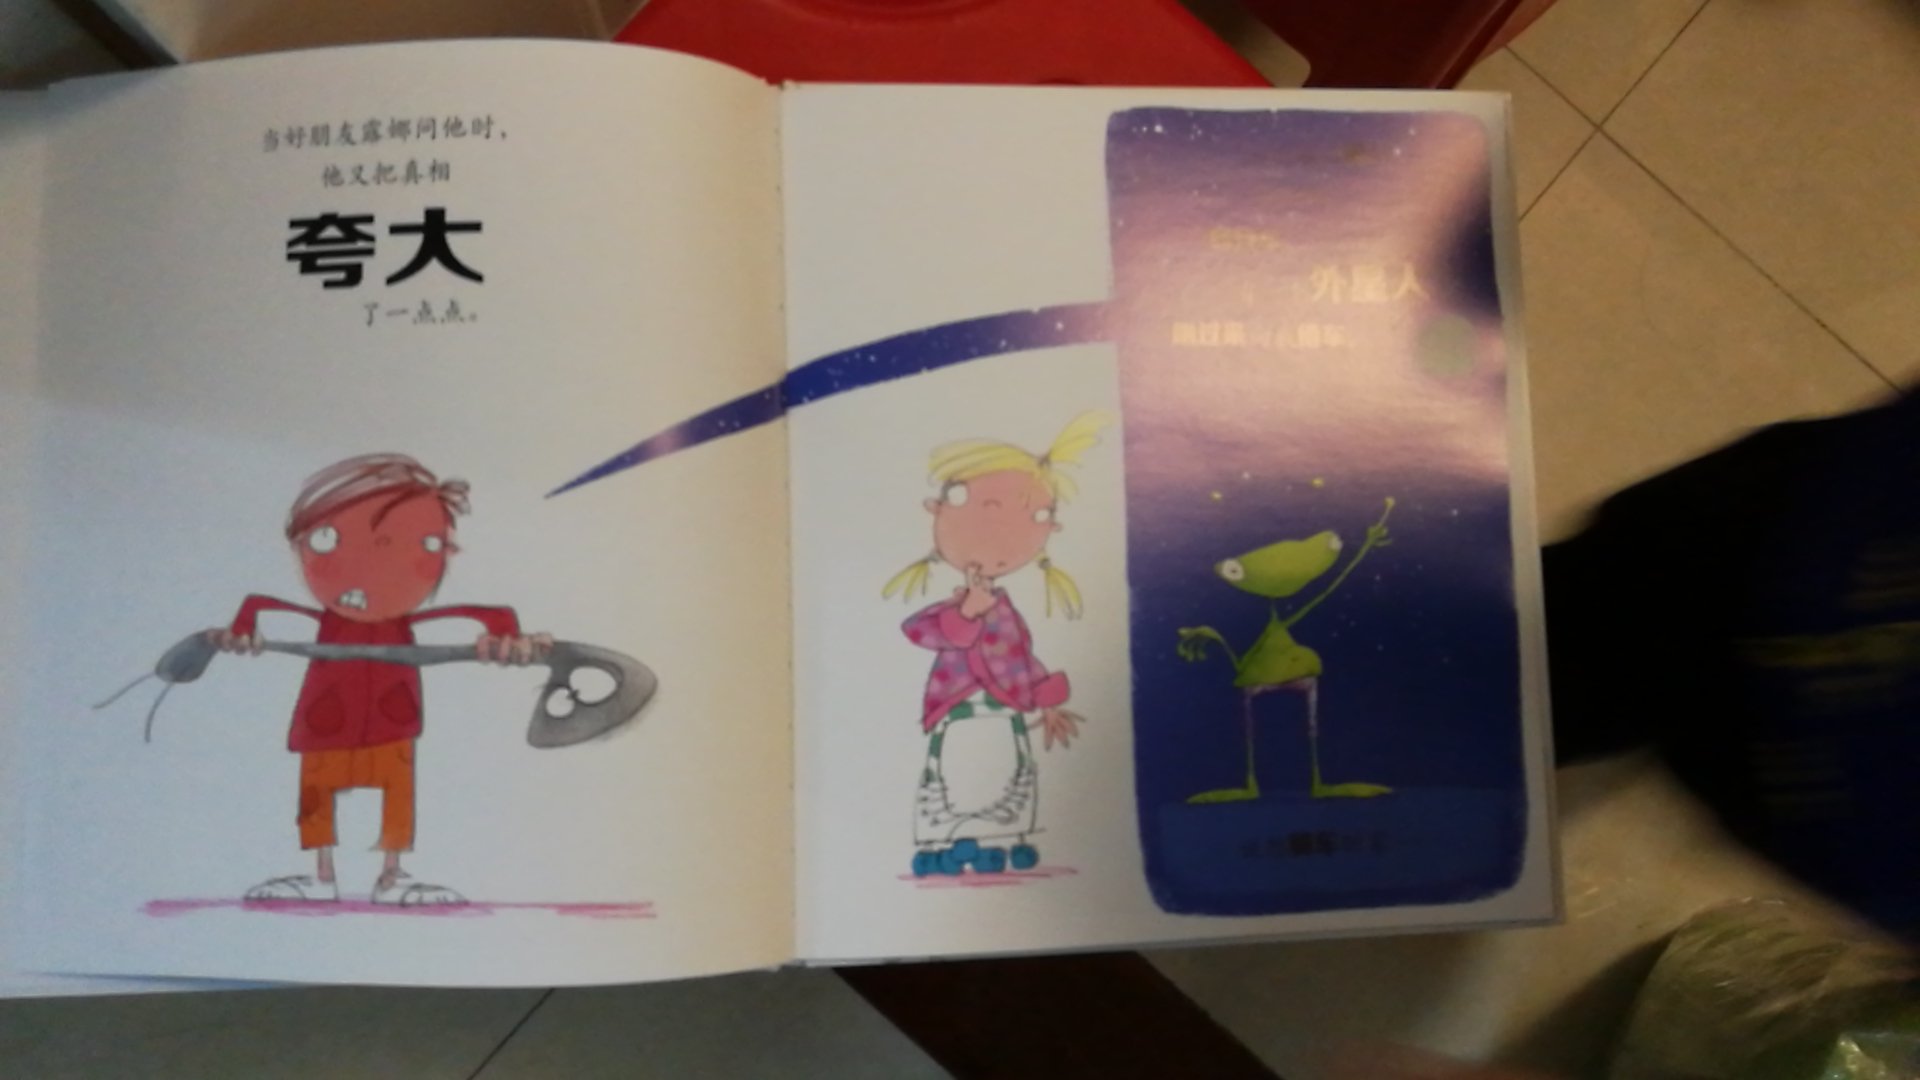 这套书很有意思的画面，孩子很喜欢看这套书。中英文的，还可以学习英语，不过英文翻译是在书的后面。印刷很清晰，质量很好。